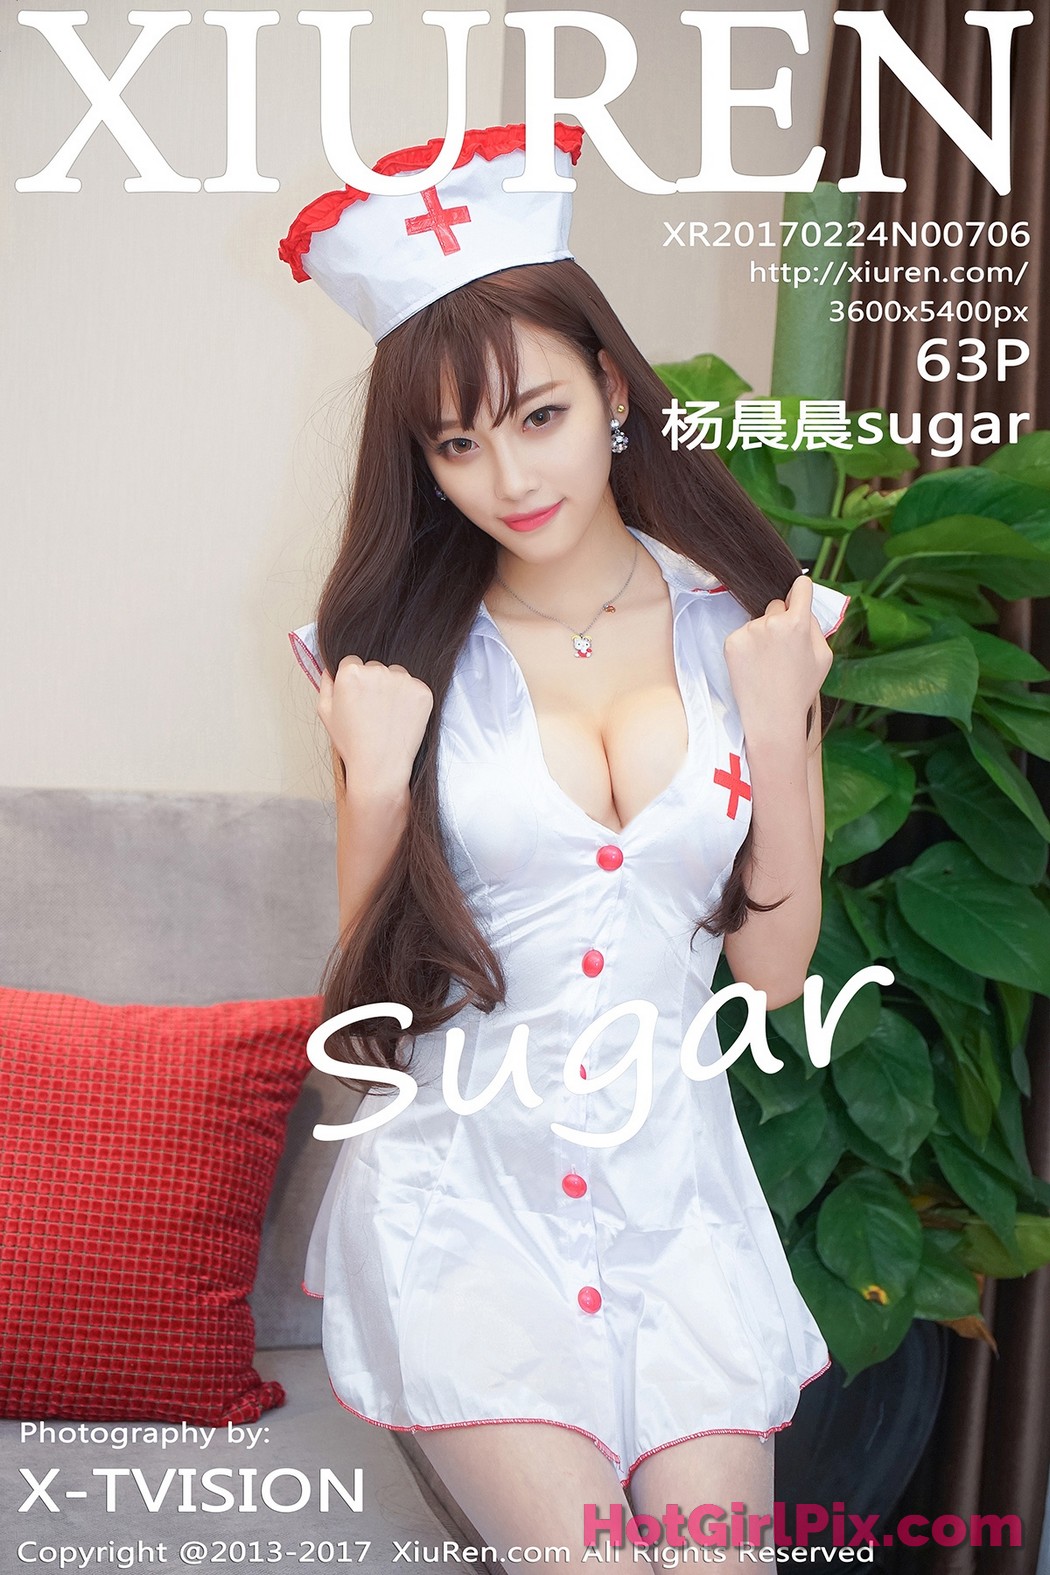 [XIUREN] No.706 Yang Chen Chen 杨晨晨sugar Cover Photo